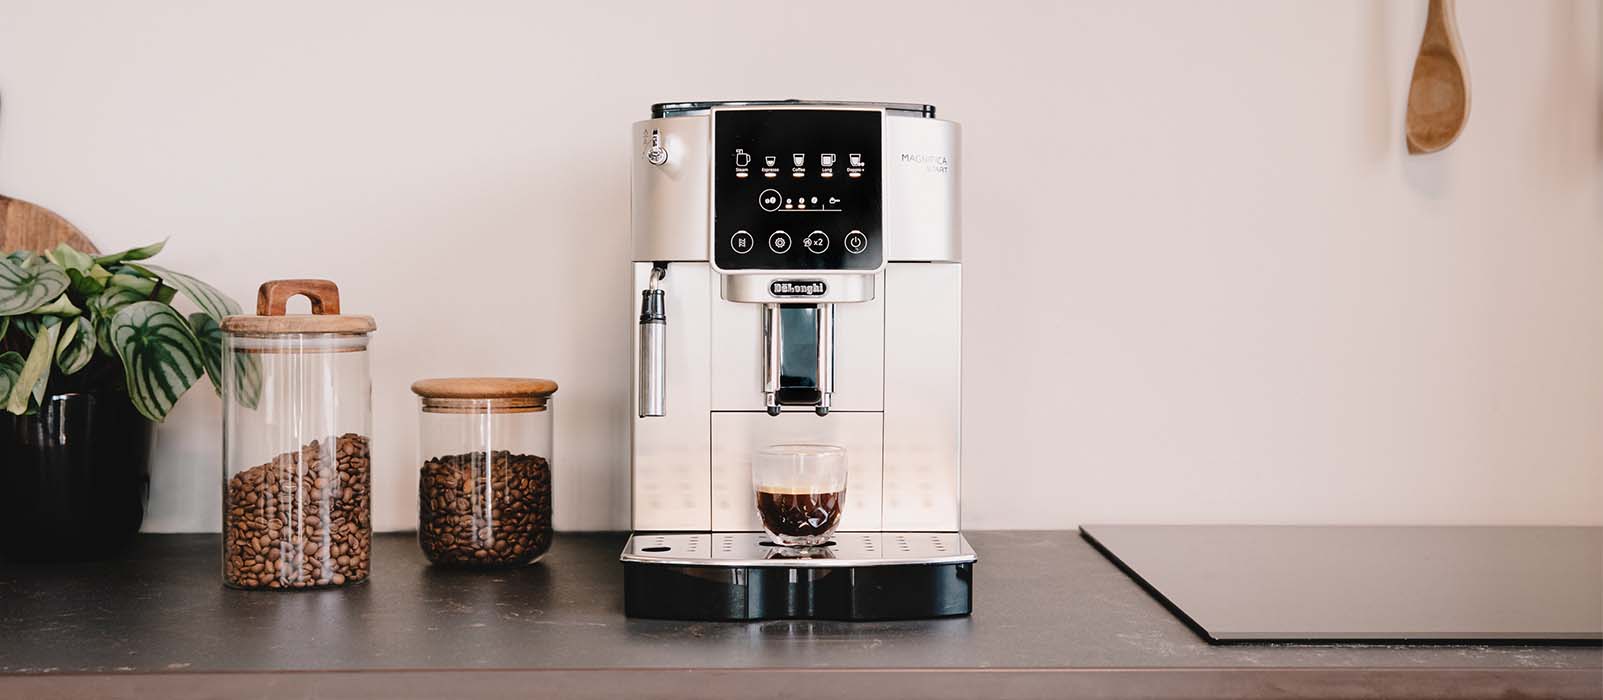 Truc facile pour détartrer votre machine à café (2 ingrédients